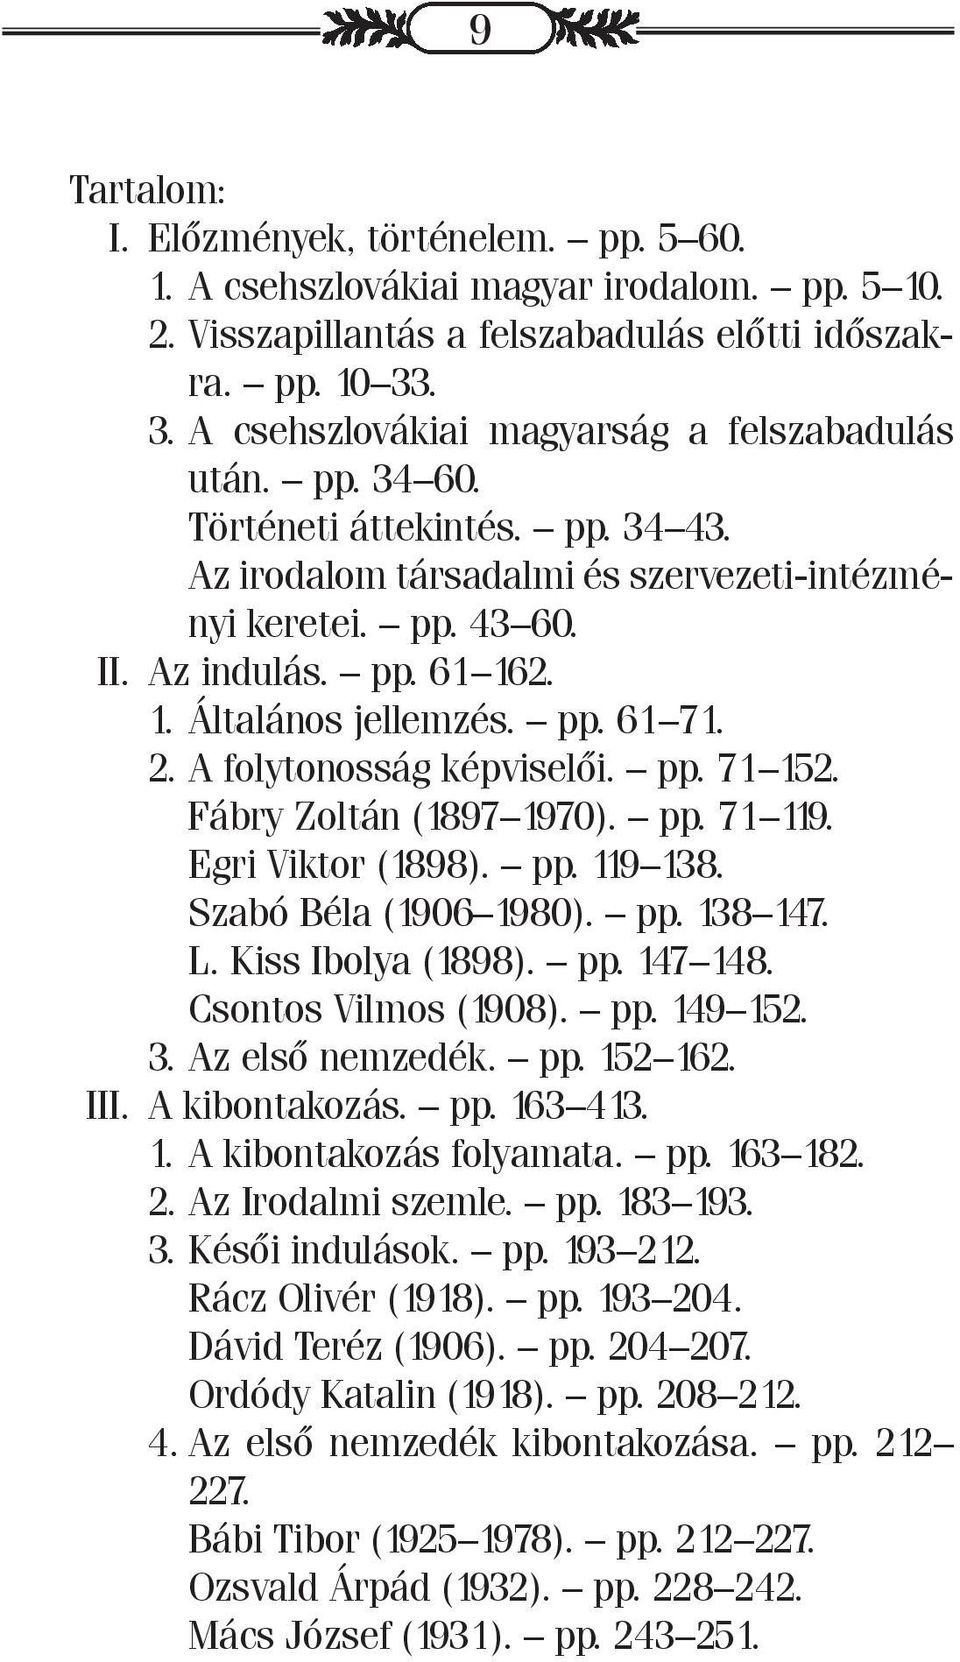 2. 1. Általános jellemzés. pp. 61 71. 2. A folytonosság képviselői. pp. 71 152. Fábry Zoltán (1897 1970). pp. 71 119. Egri Viktor (1898). pp. 119 138. Szabó Béla (1906 1980). pp. 138 147. L.